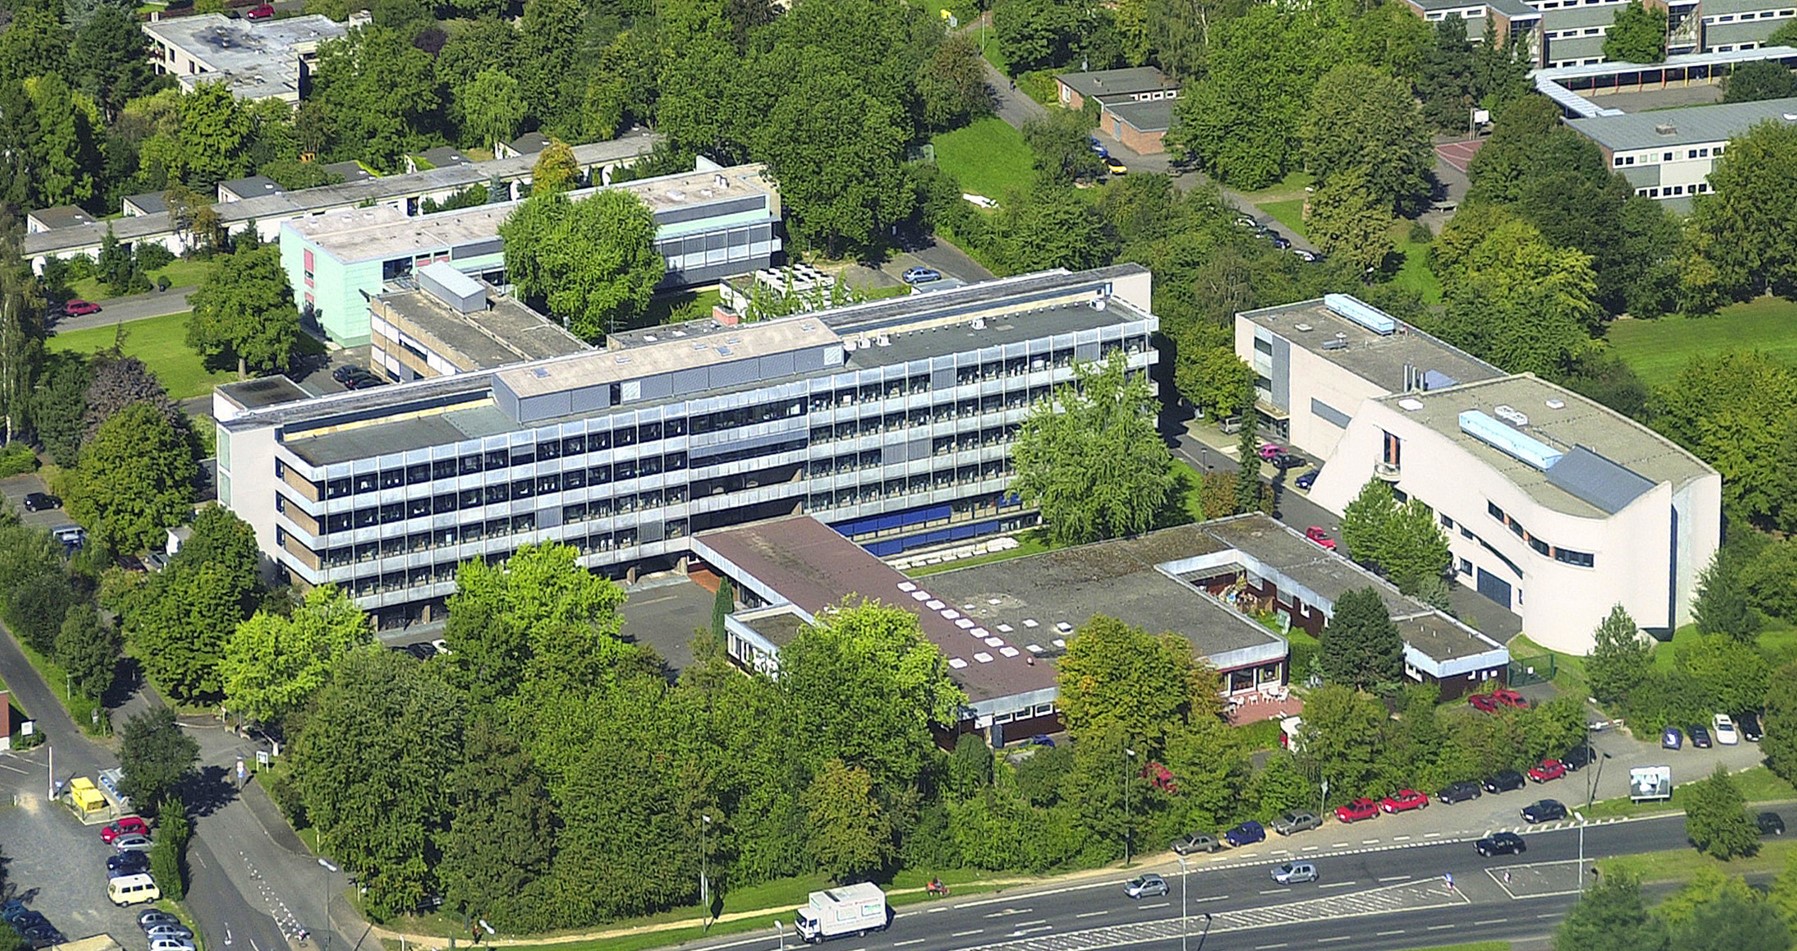 マックスプランク実験医学研究所（改組により2022年からマックスプランク複合科学研究所）の建物。戦後の復興期に建てられた年季ものだが、ここから世界一流の研究成果が生み出されている＝ドイツ・ゲッティンゲン、マックスプランク協会提供